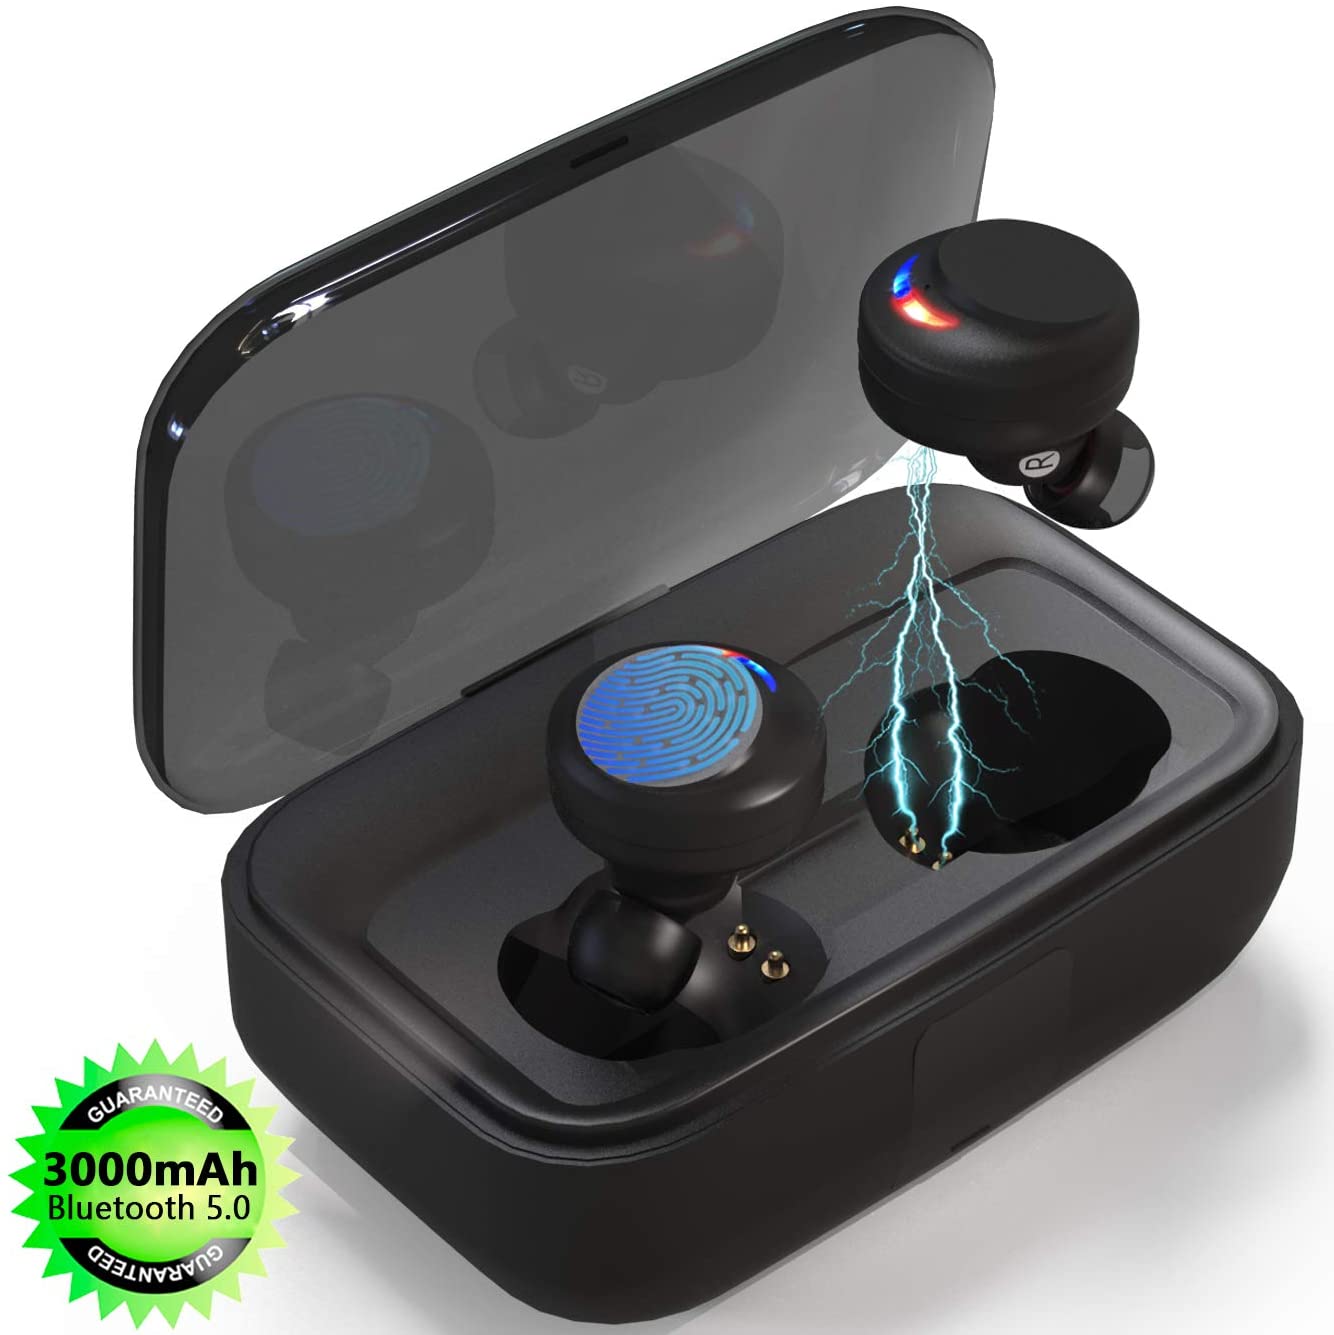 Auriculares deportivos Bluetooth con micrófono y controlador de reproducción